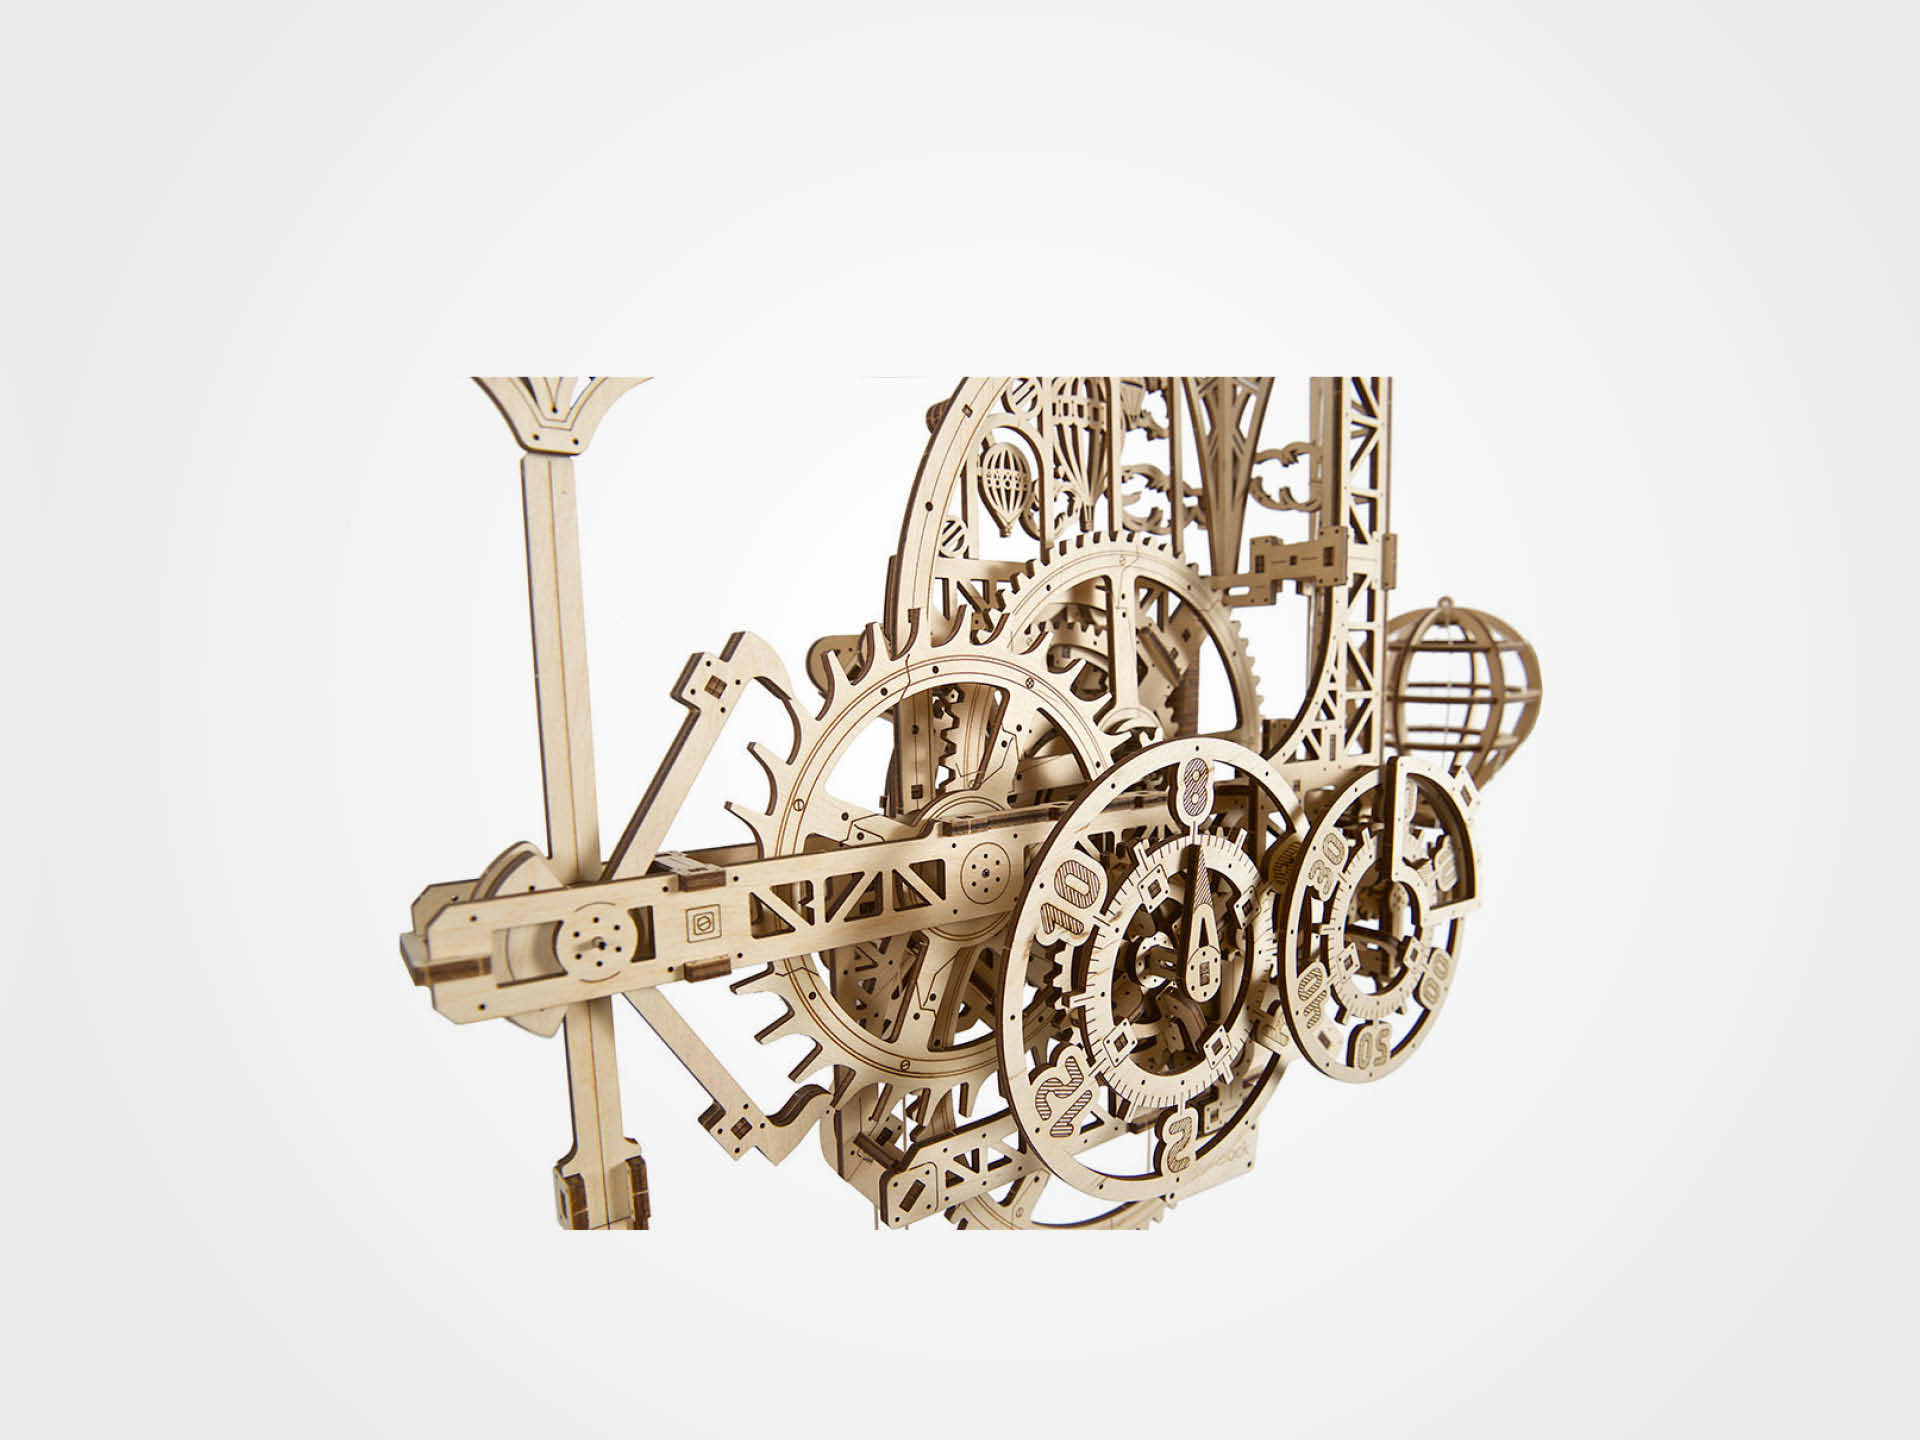 3D-Holzpuzzle, Wanduhr mit Pendel